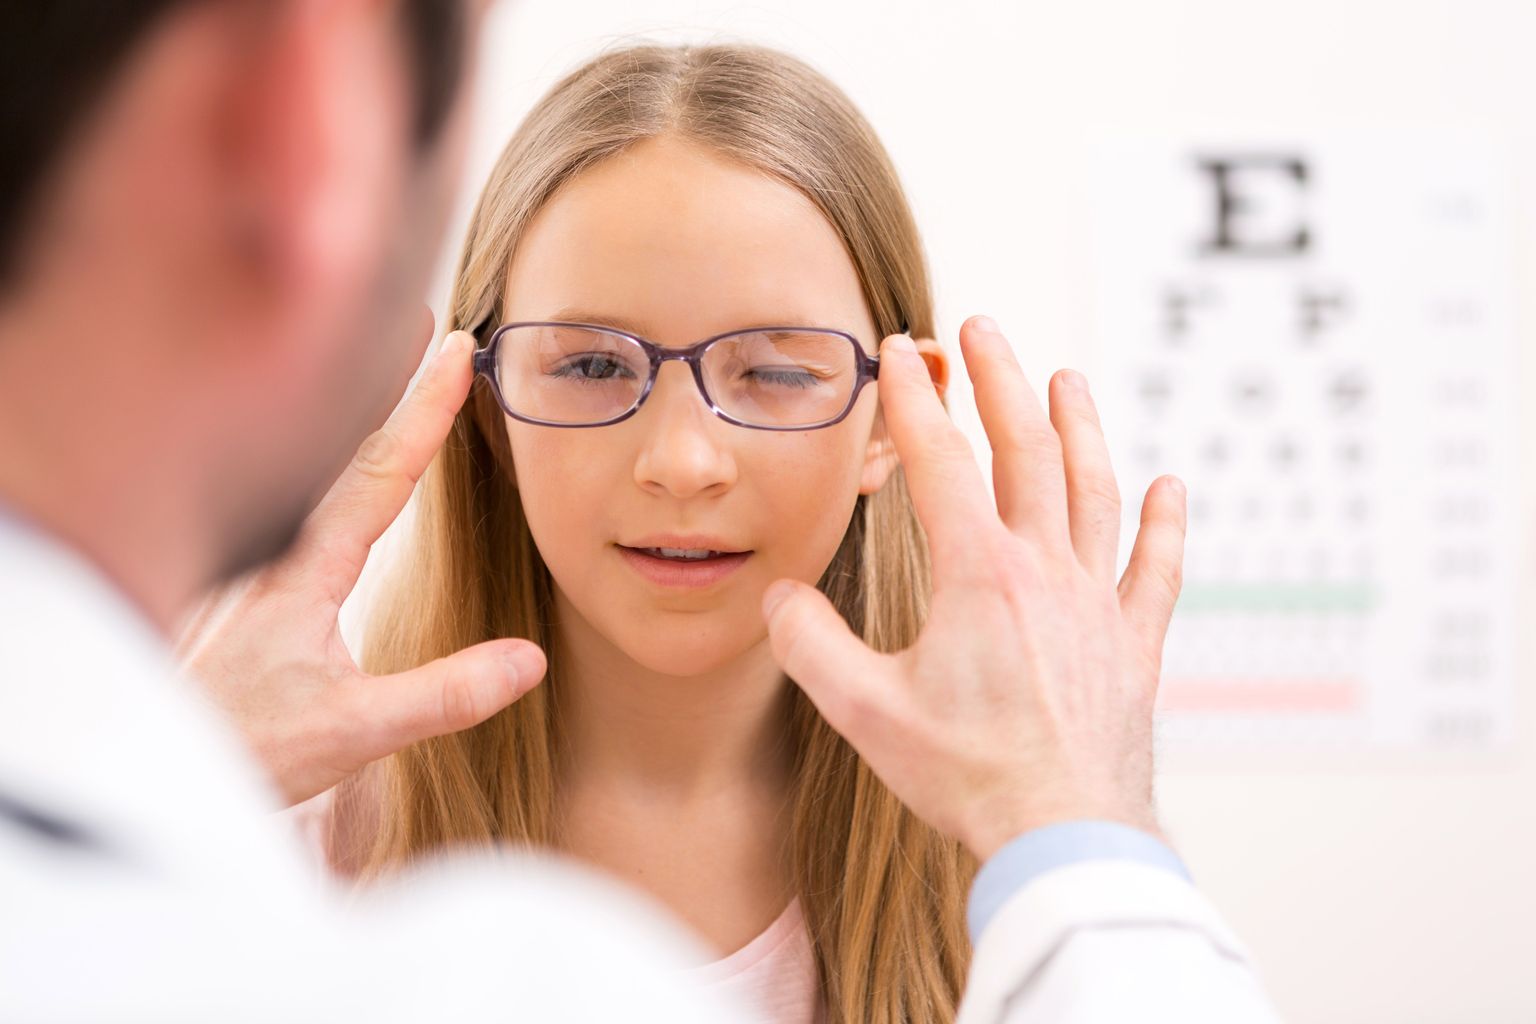 Lastel võib olla tarvis raviprille sageli vahetada, sest prillid võivad väikseks jääda või muutub prillide tugevus.